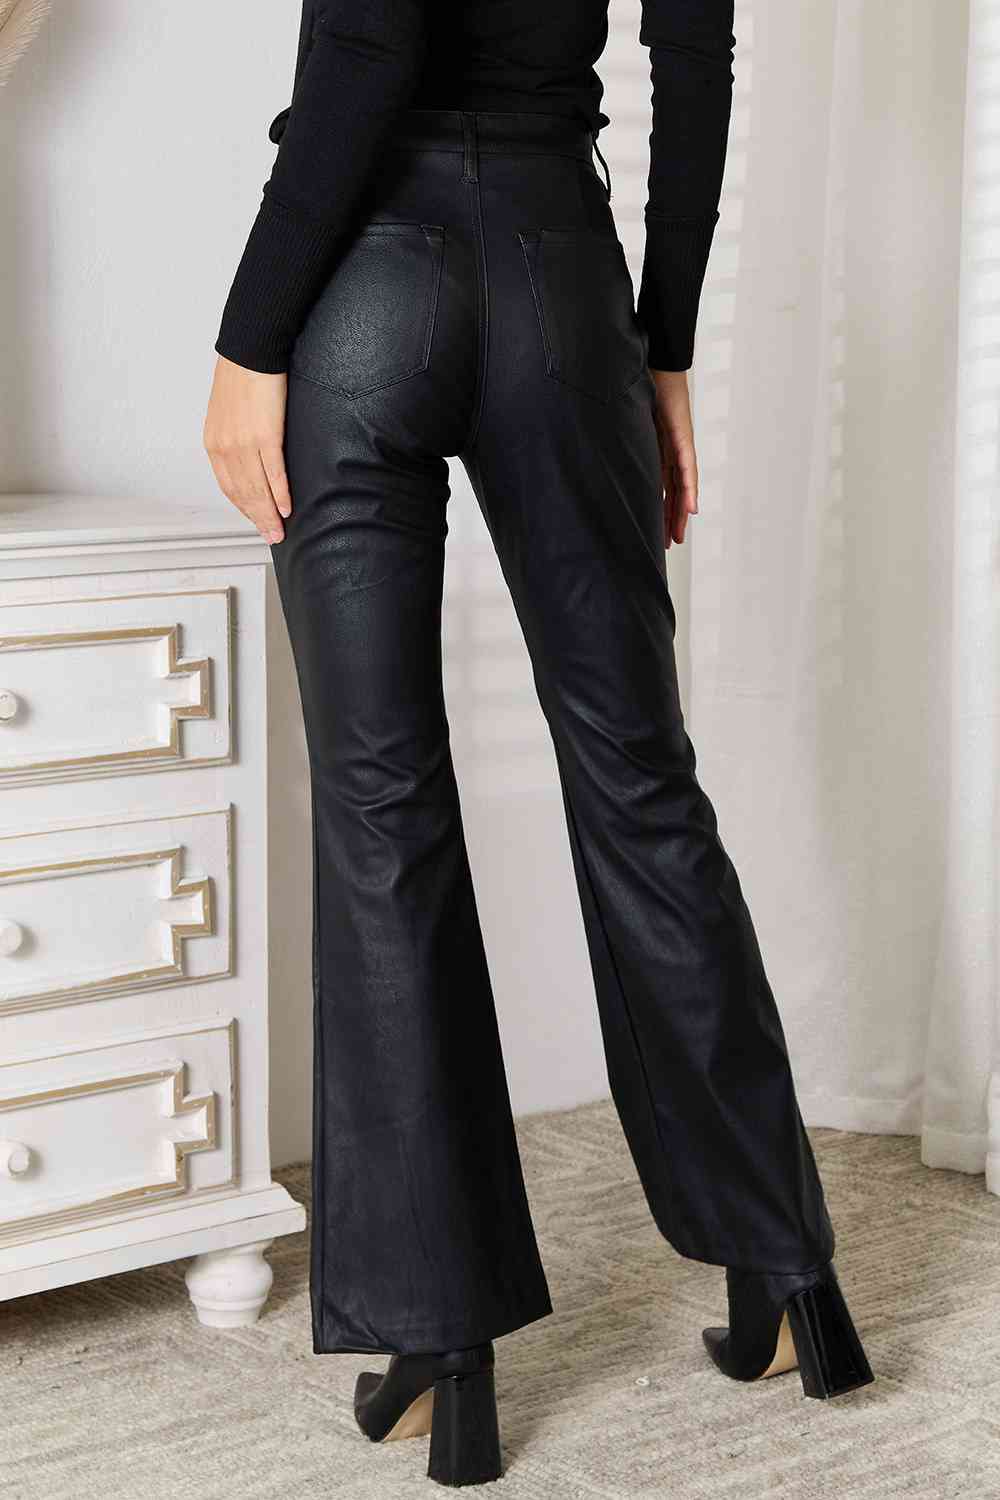 Slit Flare Leg Women Pants | Fashionsarah.com